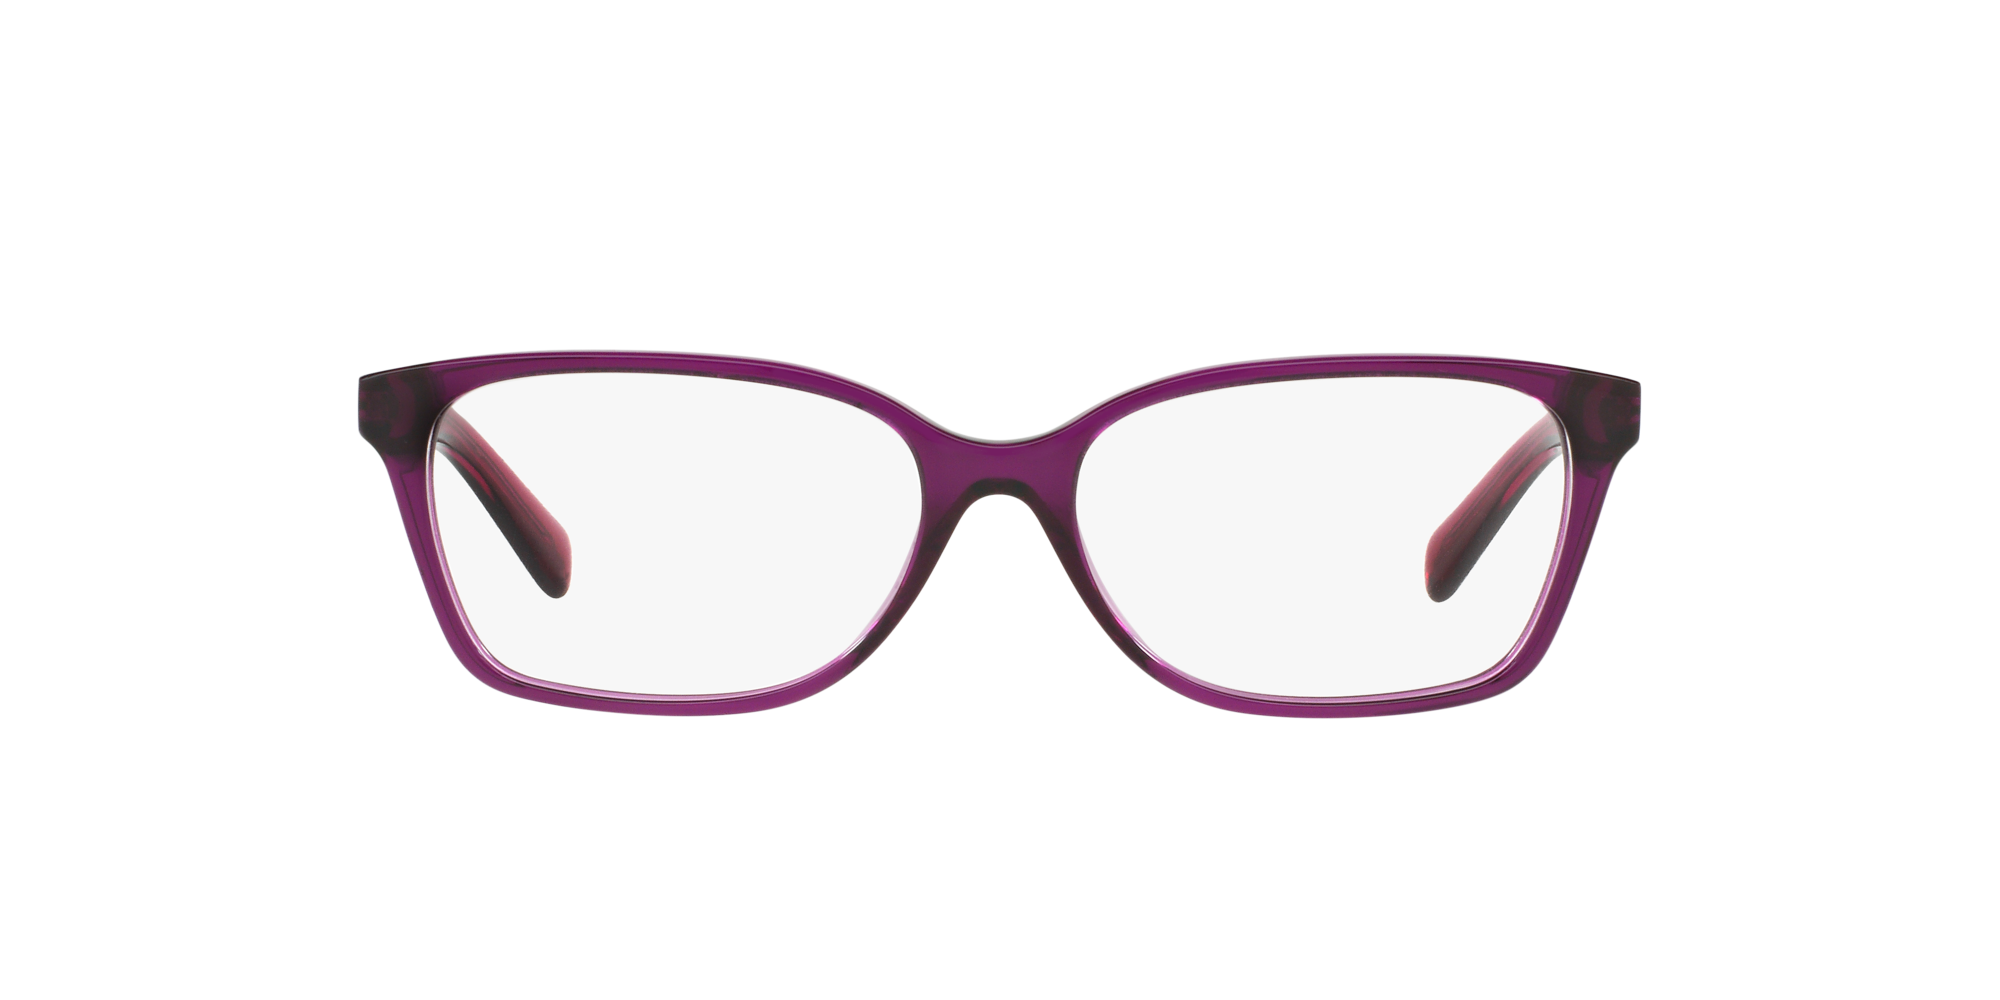 michael kors purple eyeglasses